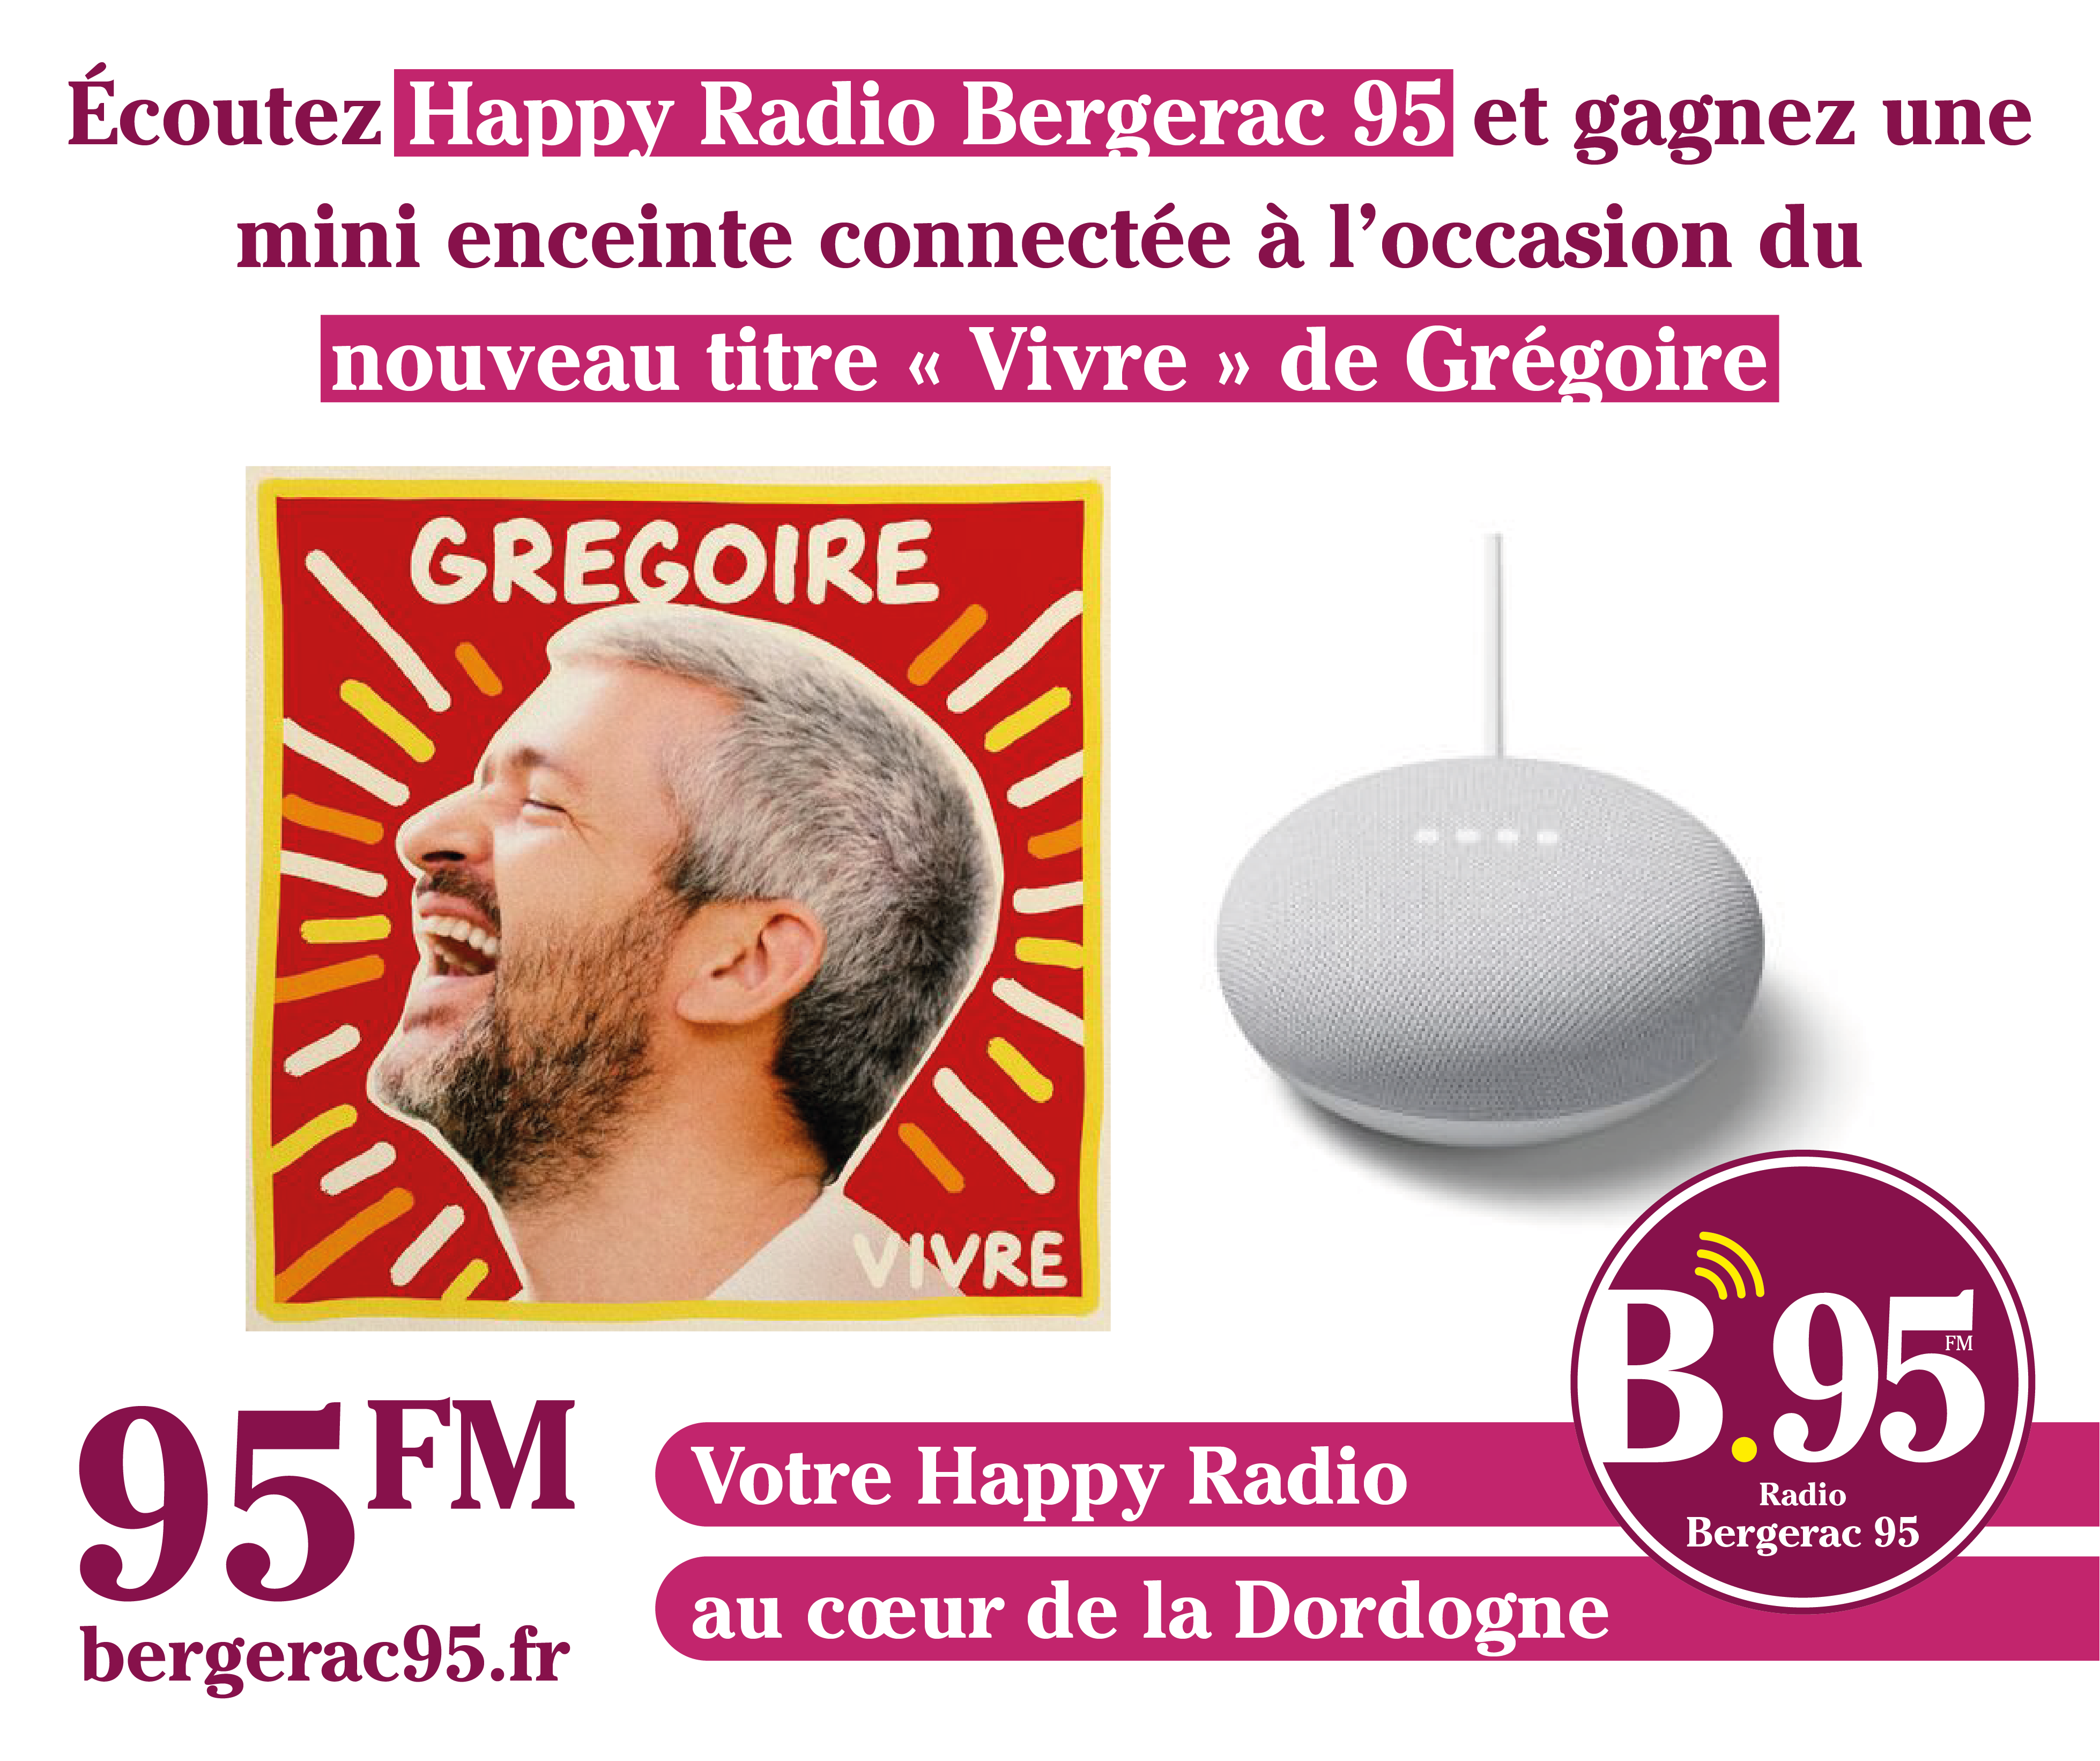 You are currently viewing Écoutez Bergerac 95 Happy Radio et gagnez votre enceinte connectée